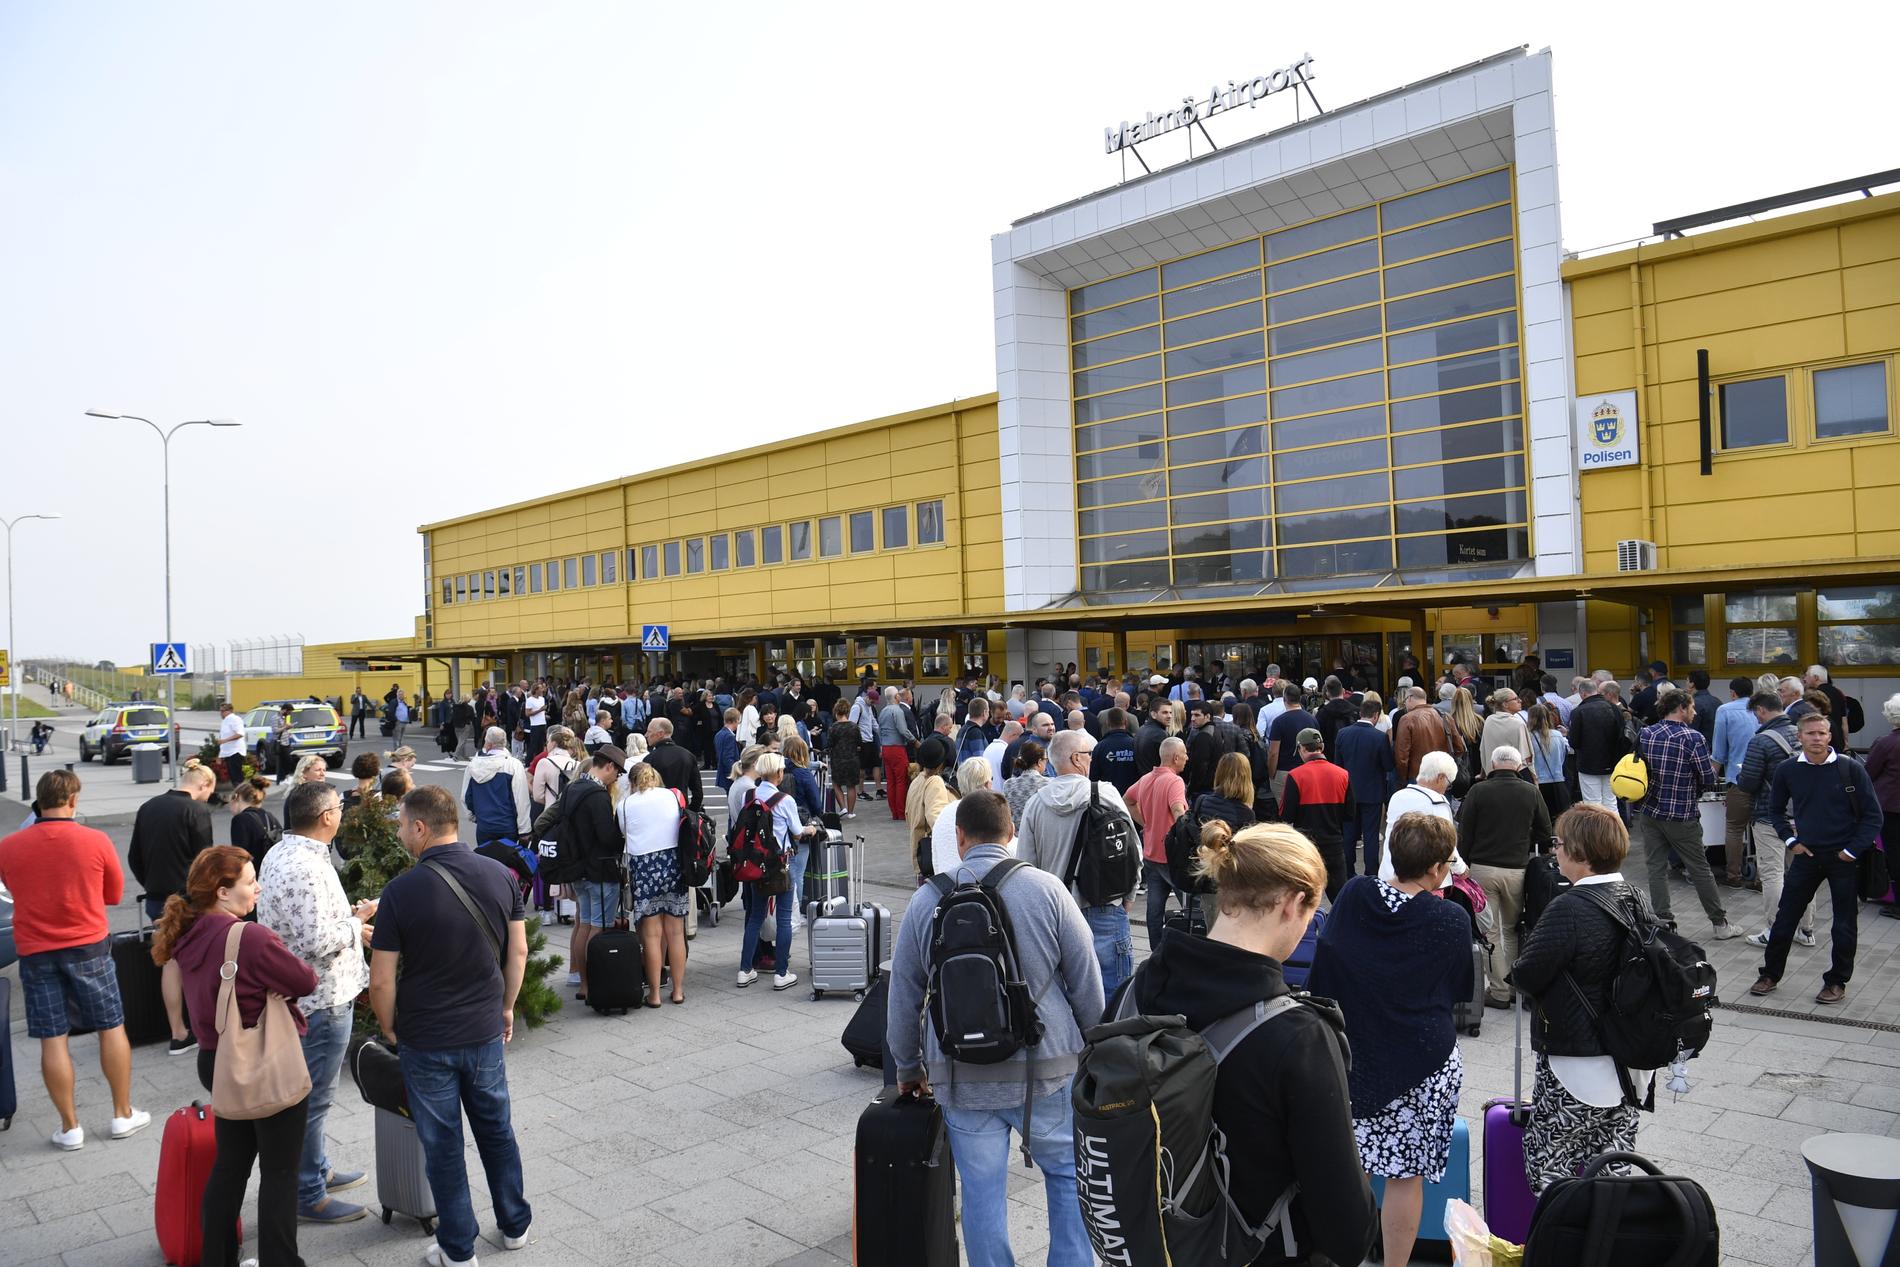 Polis och passagerare utanför avgångshallen på Malmö flygplats sedan flygplatsen utrymts. Det misstänkta föremålet som hittades i säkerhetskontrollen visade sig vara ofarligt.